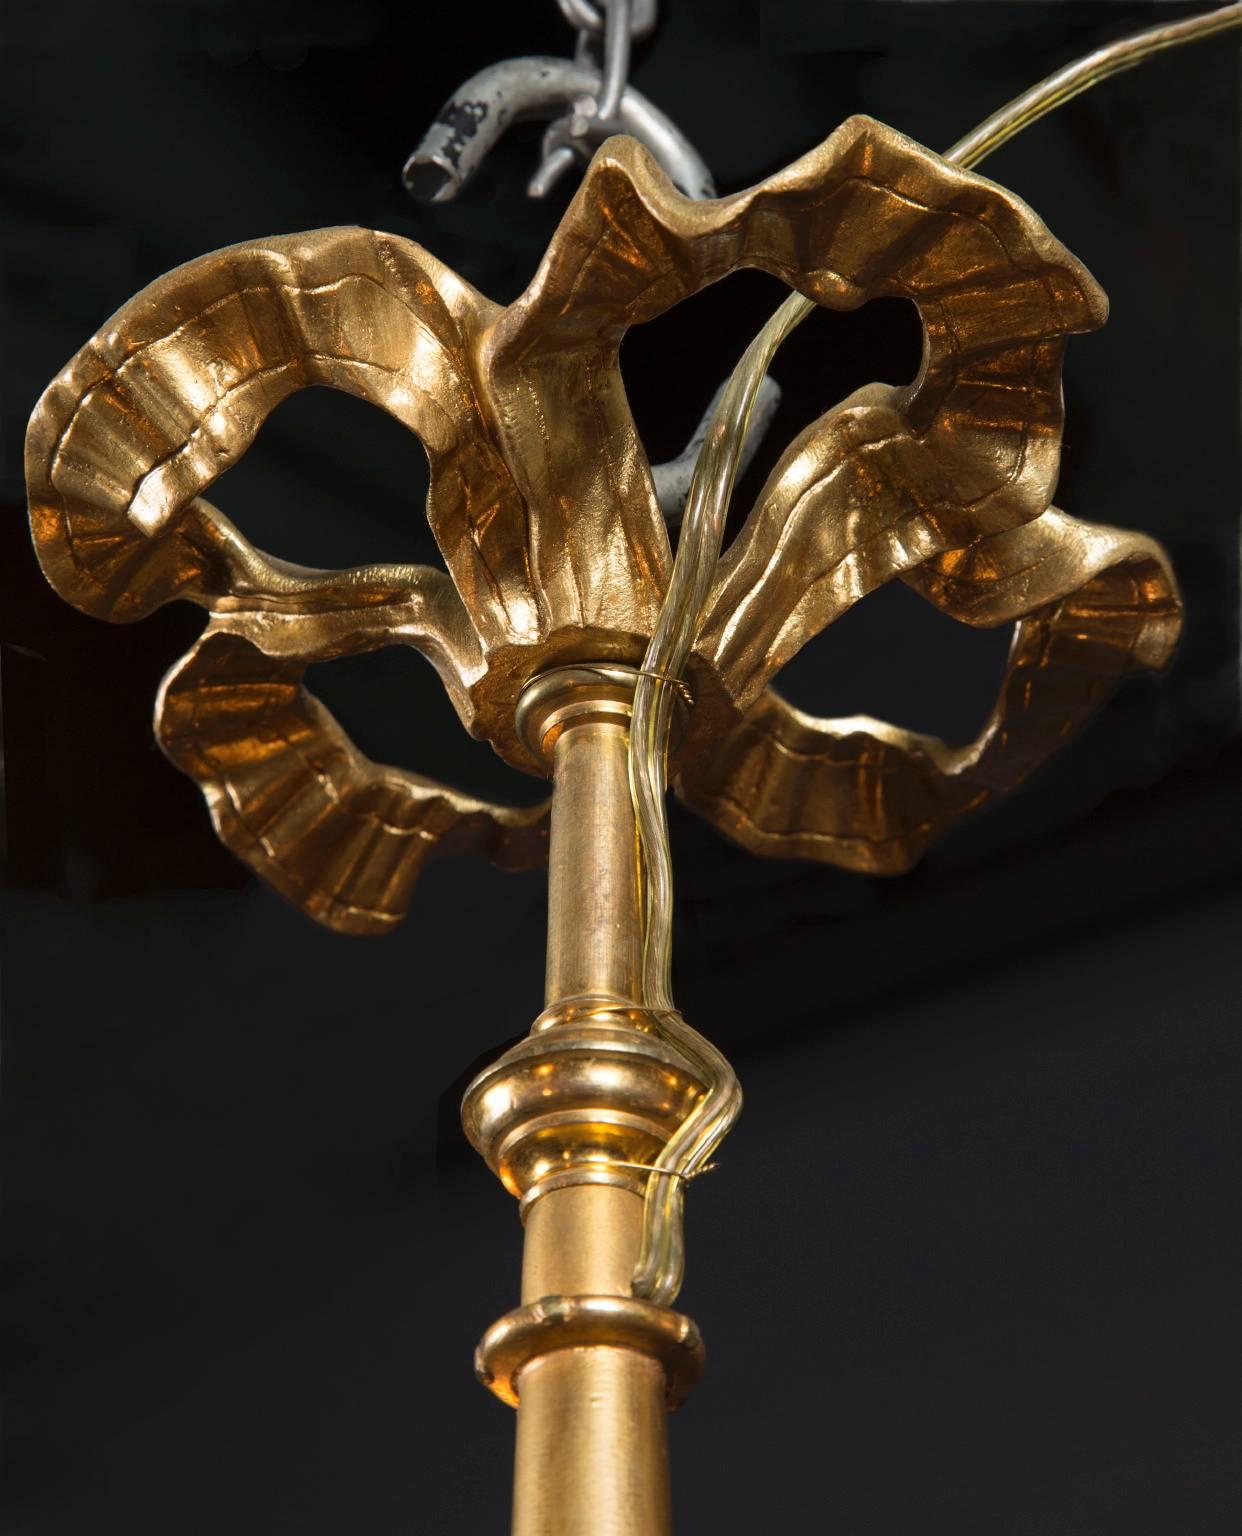 Dieser französische Louis-XVI-Kronleuchter aus Erzbronze stammt aus dem 19. Jahrhundert und ist in seiner Schlichtheit elegant. Das Stück besteht aus einem metallischen Band, das oben ausläuft. Darunter befinden sich drei Lichter, die auf drei Armen